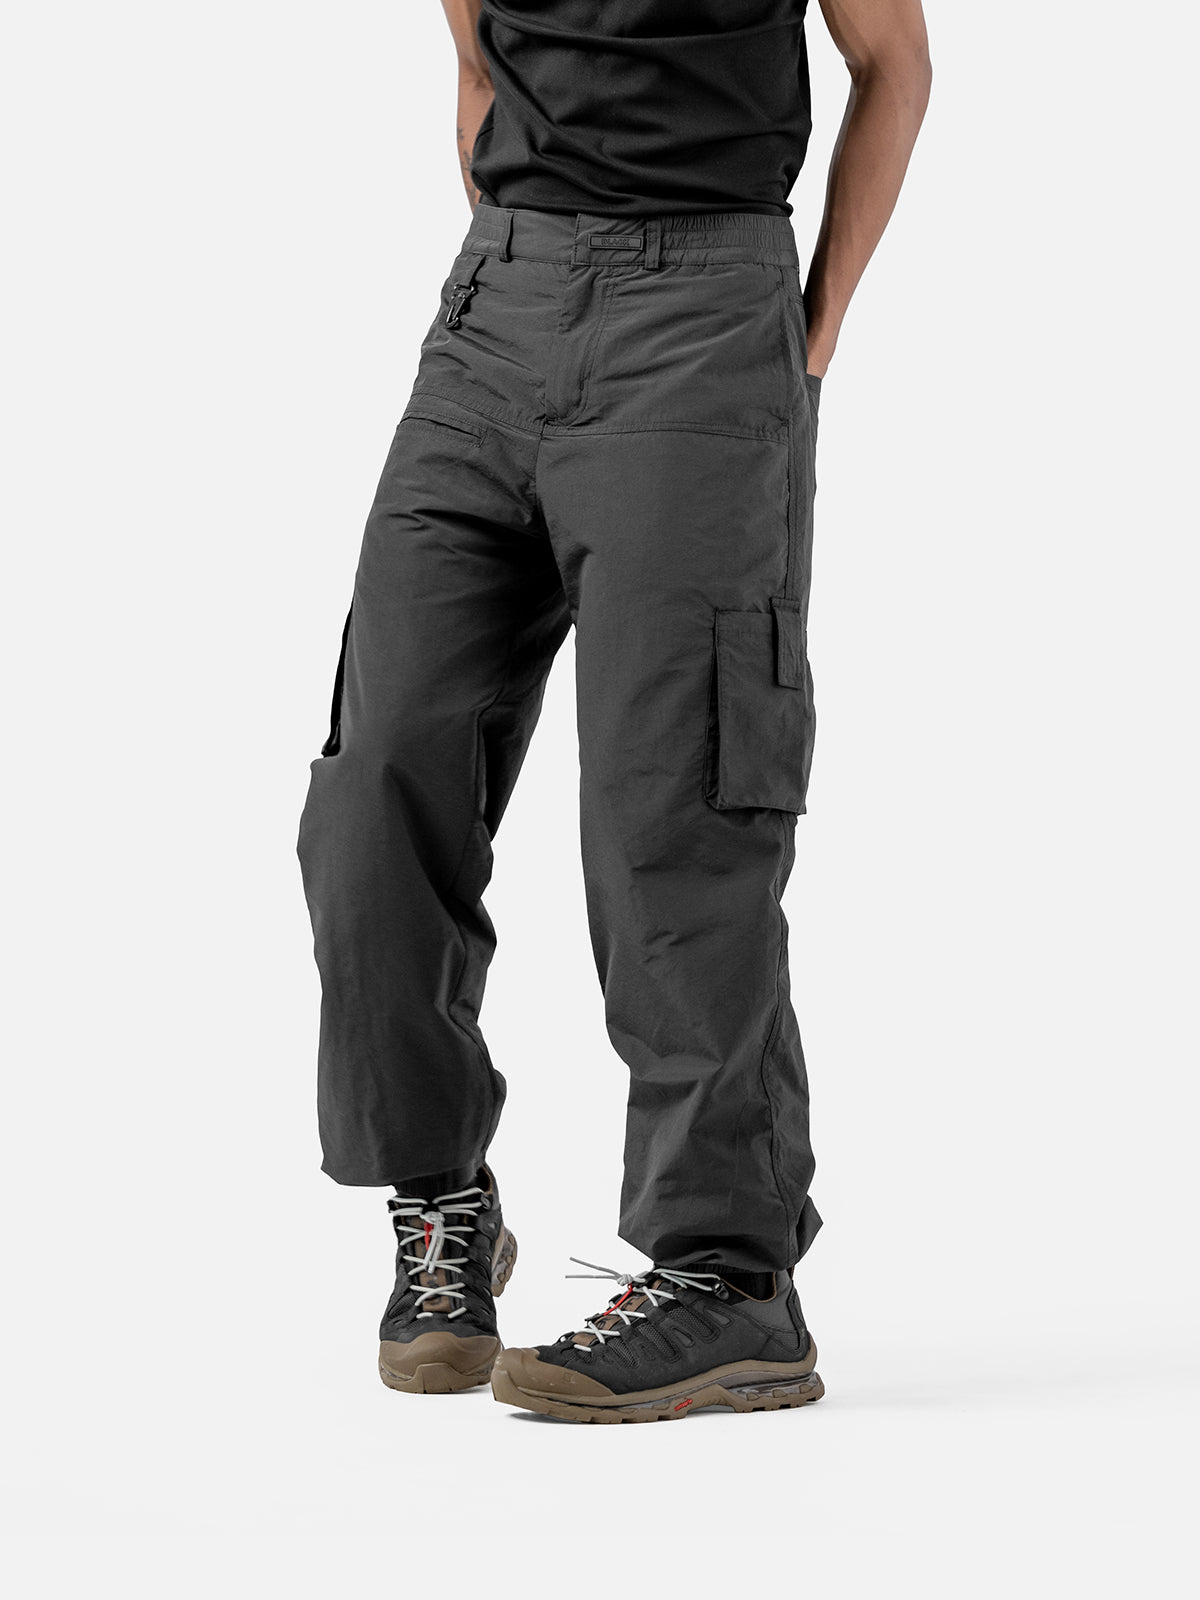 Y3 Cargo Pants - Black | Blacktailor – BLACKTAILOR